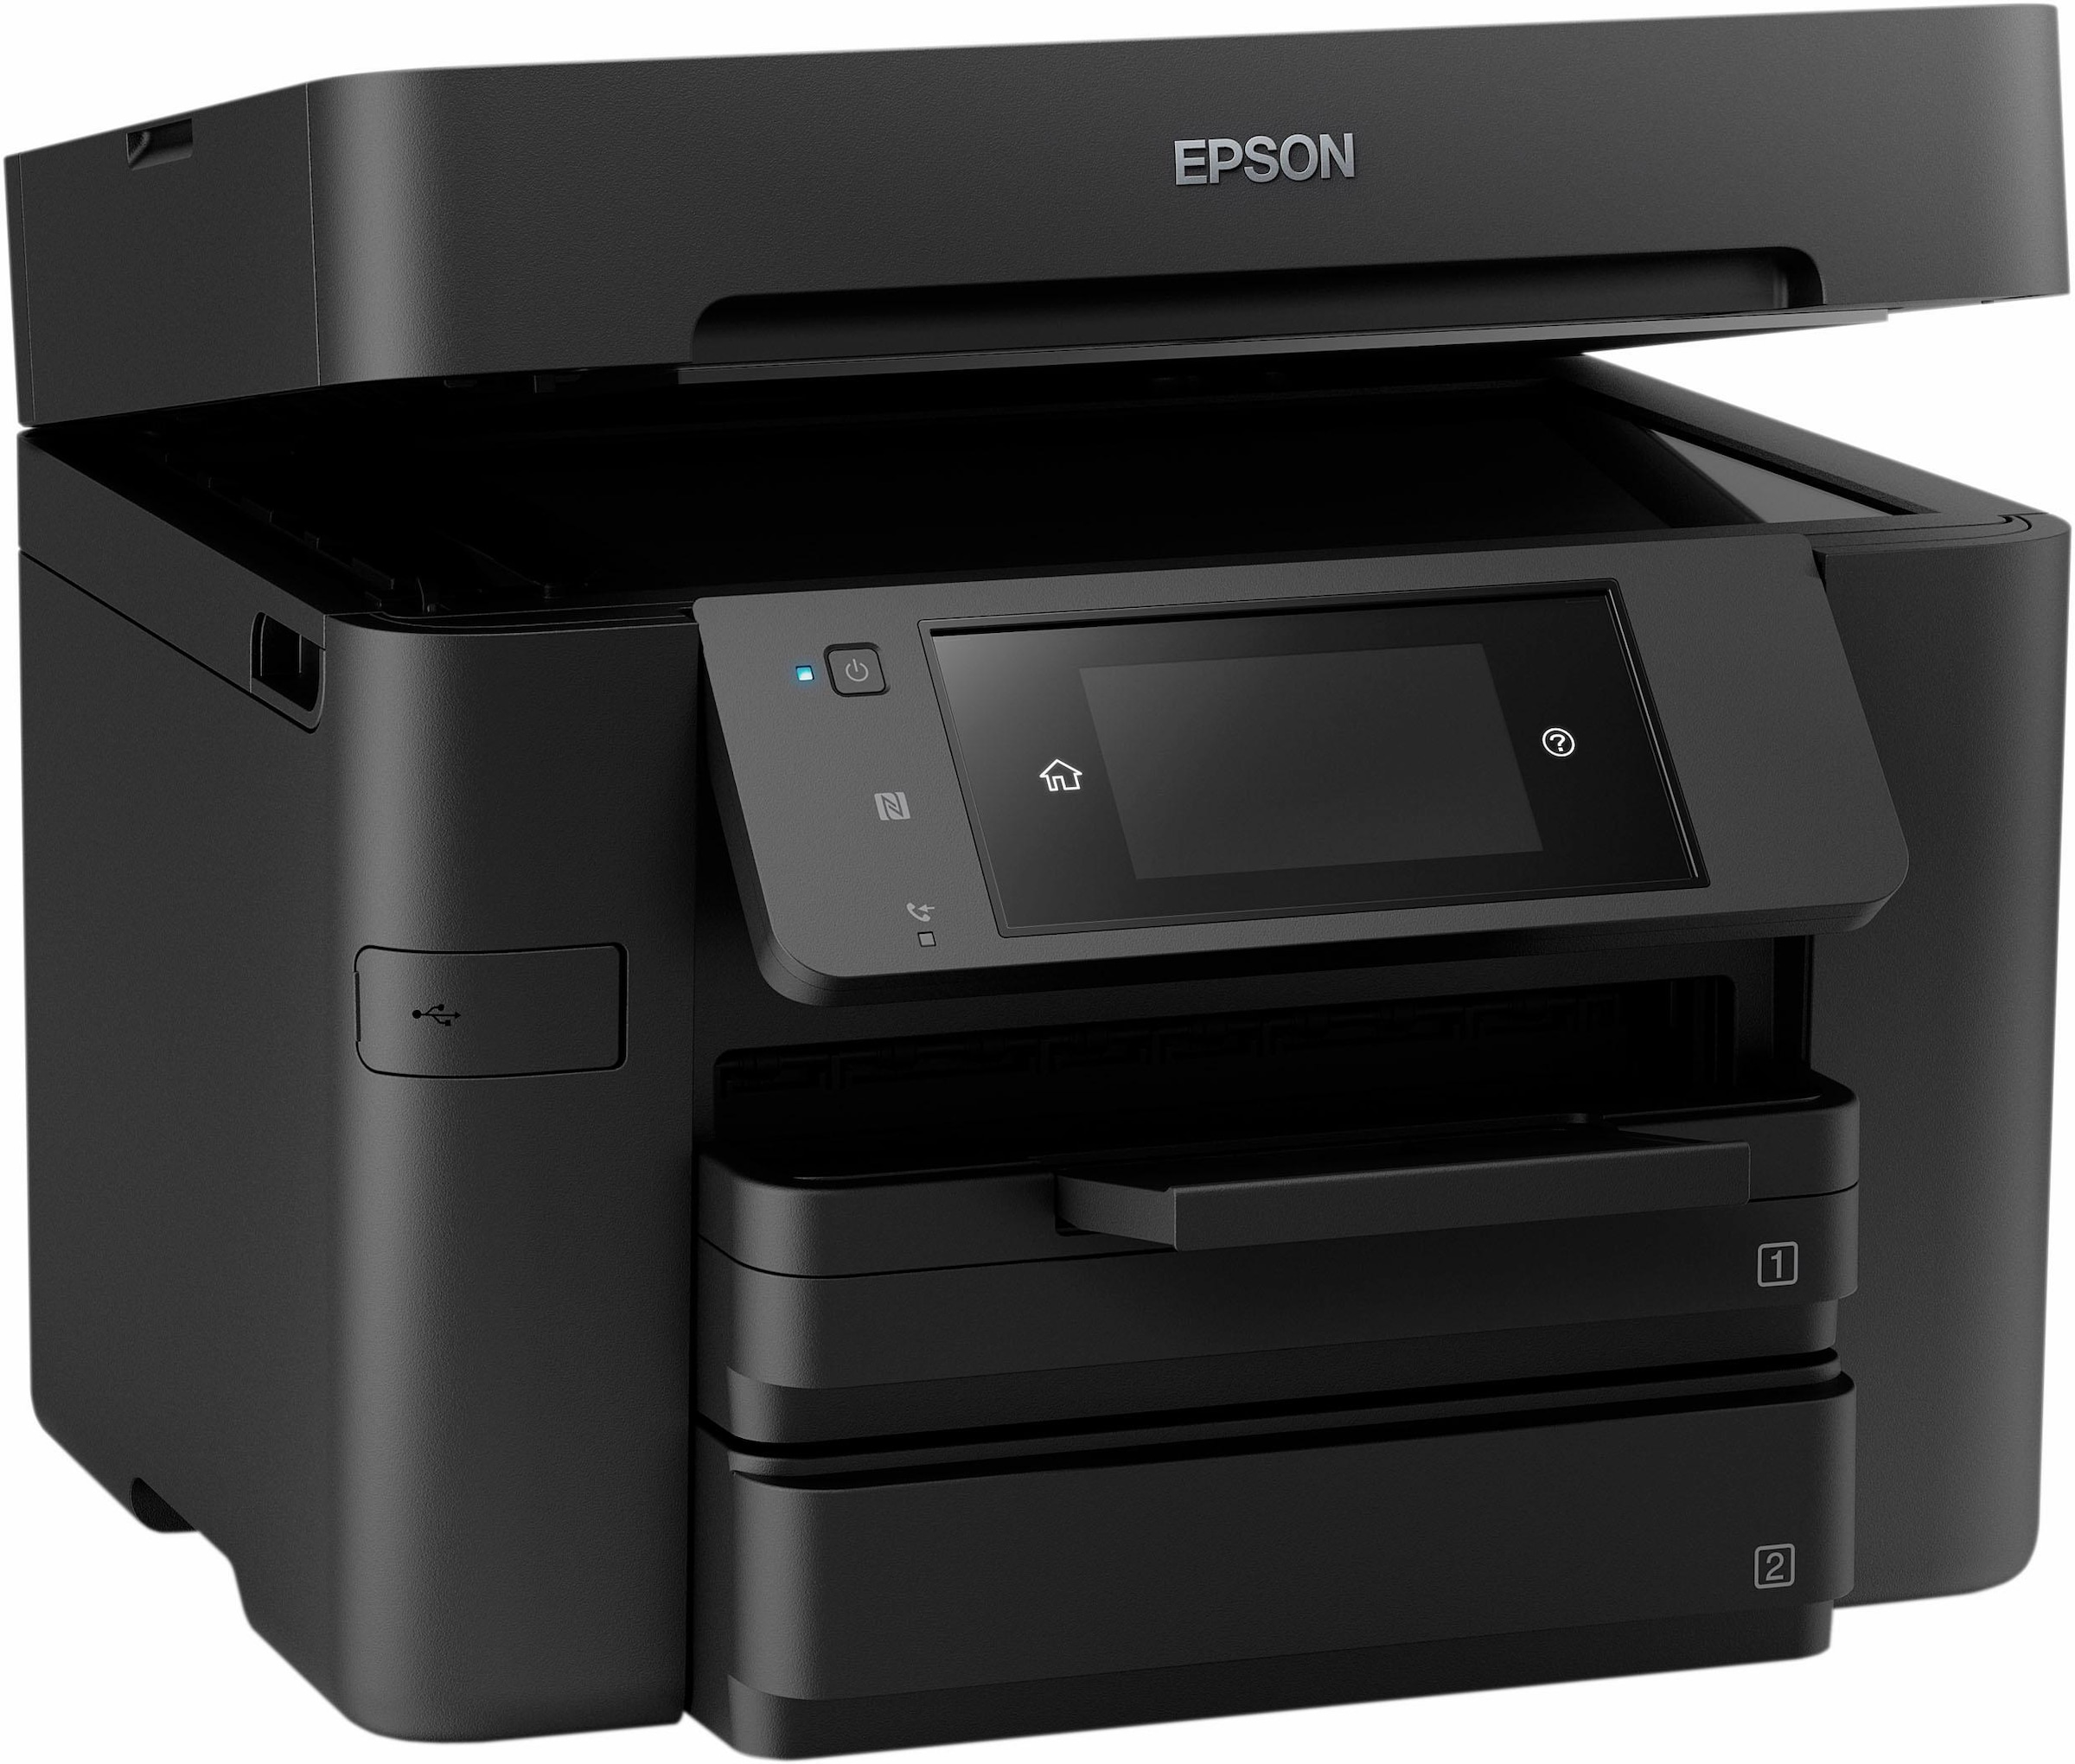 Epson Multifunktionsdrucker Workforce Pro Wf 4740dtwf Baur 2415